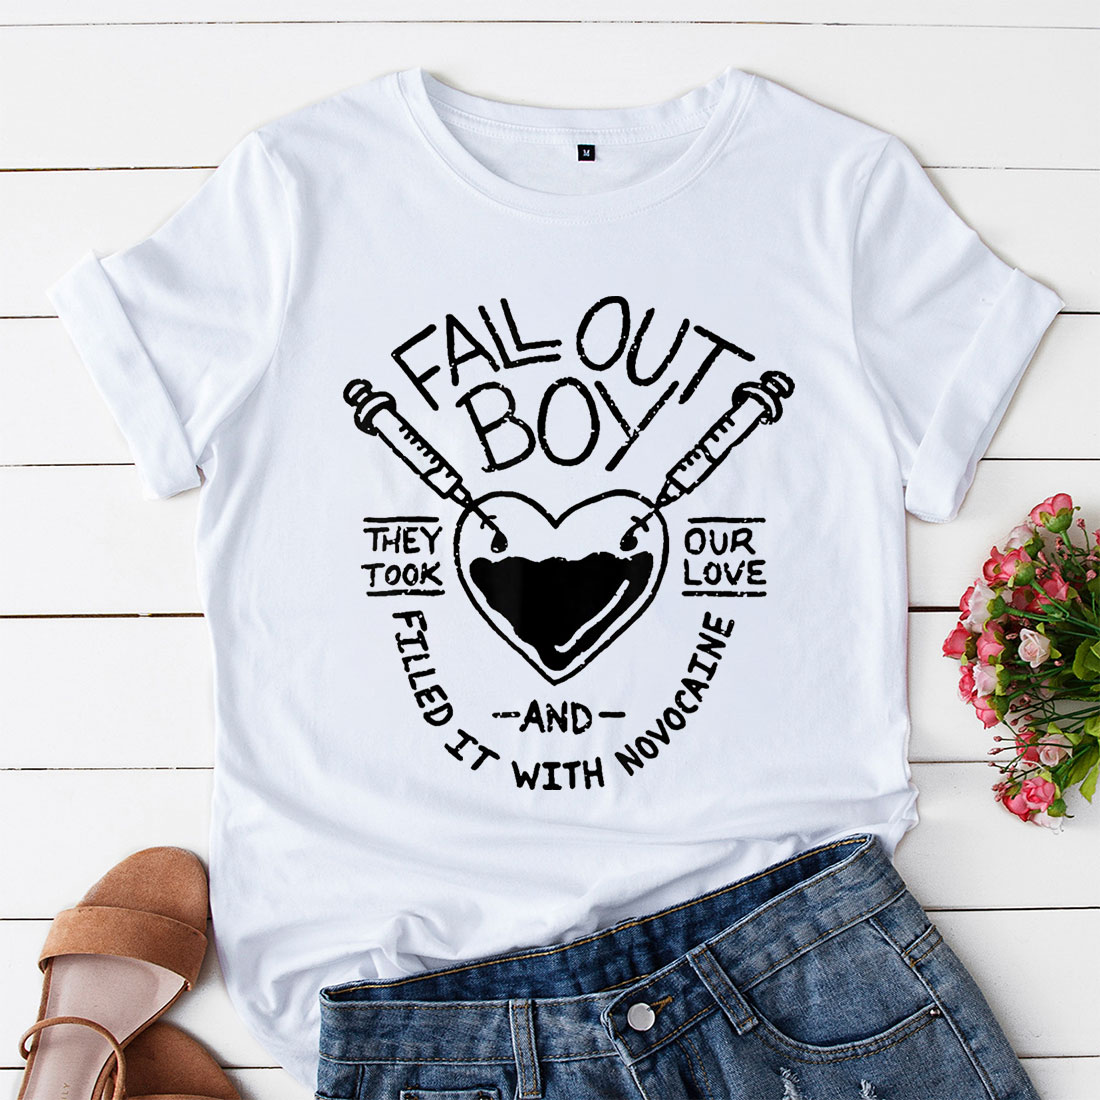 fall out boy shirt (hoodie, sweatshirt, t-shirt)